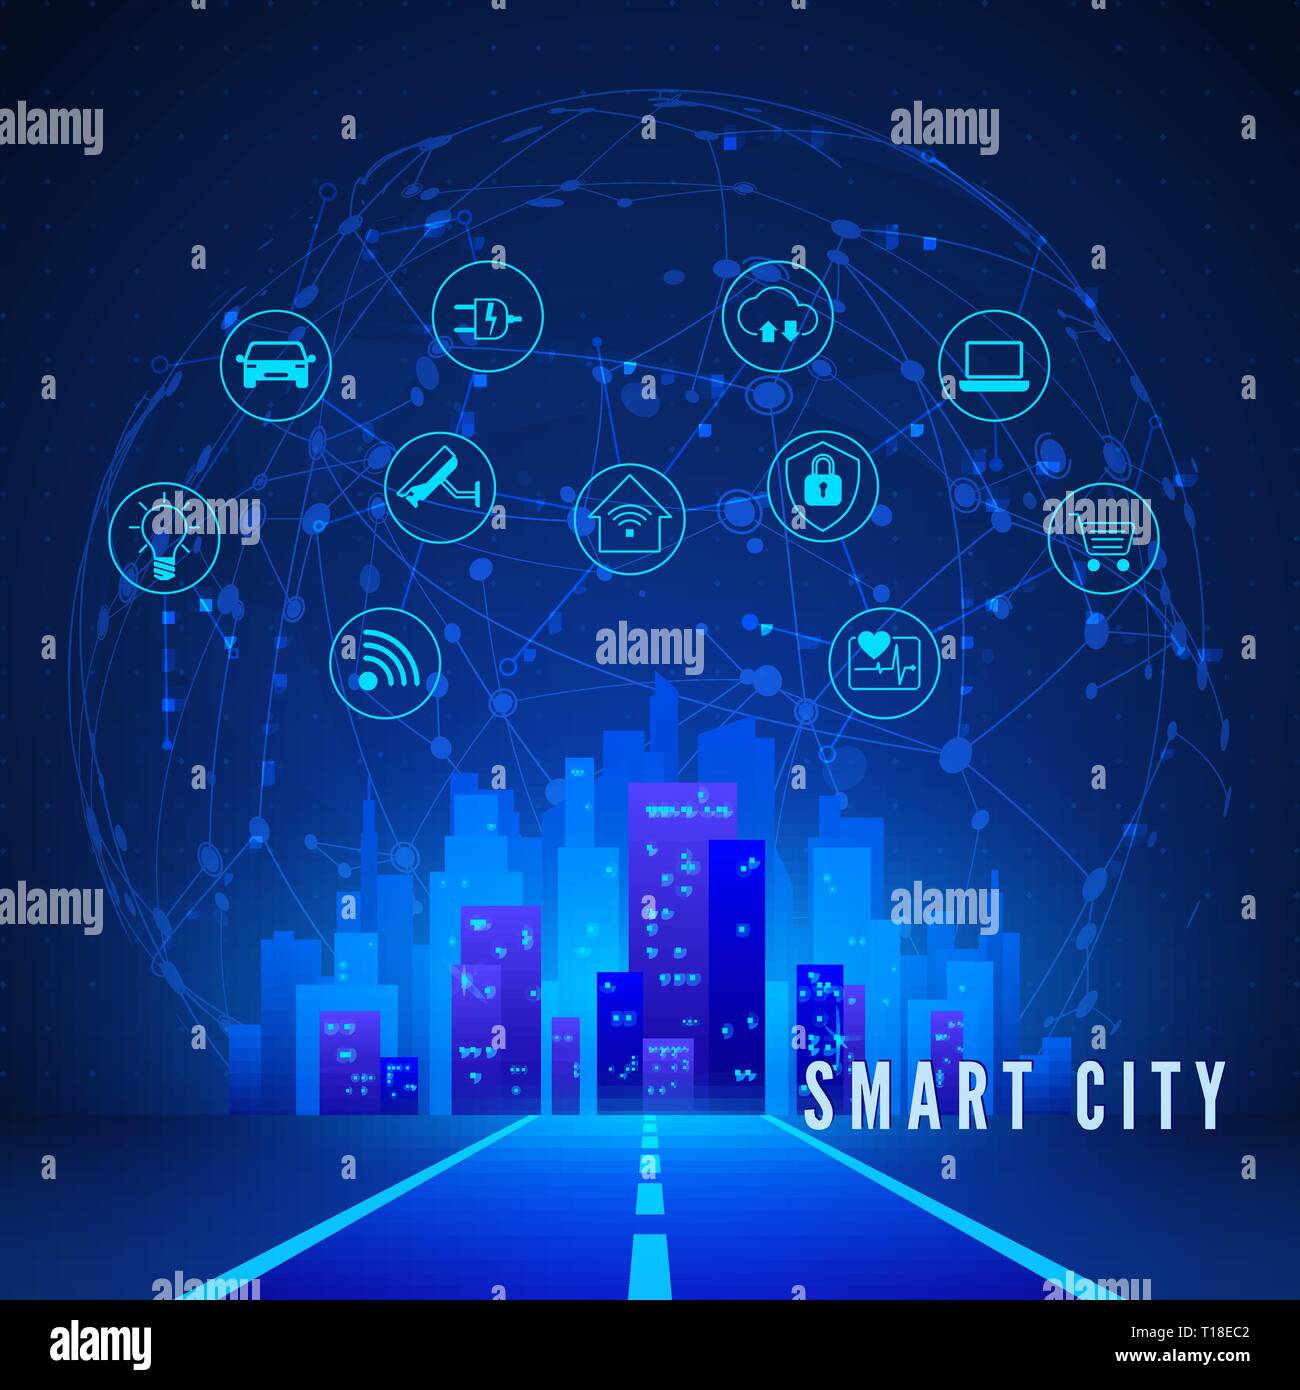 Moderne Smart City Konzept in blauen Farben. Smart City Landschaft und Systemüberwachung und -steuerung Icon Set. Technologie Hintergrund. Vector Illustration Stock Vektor